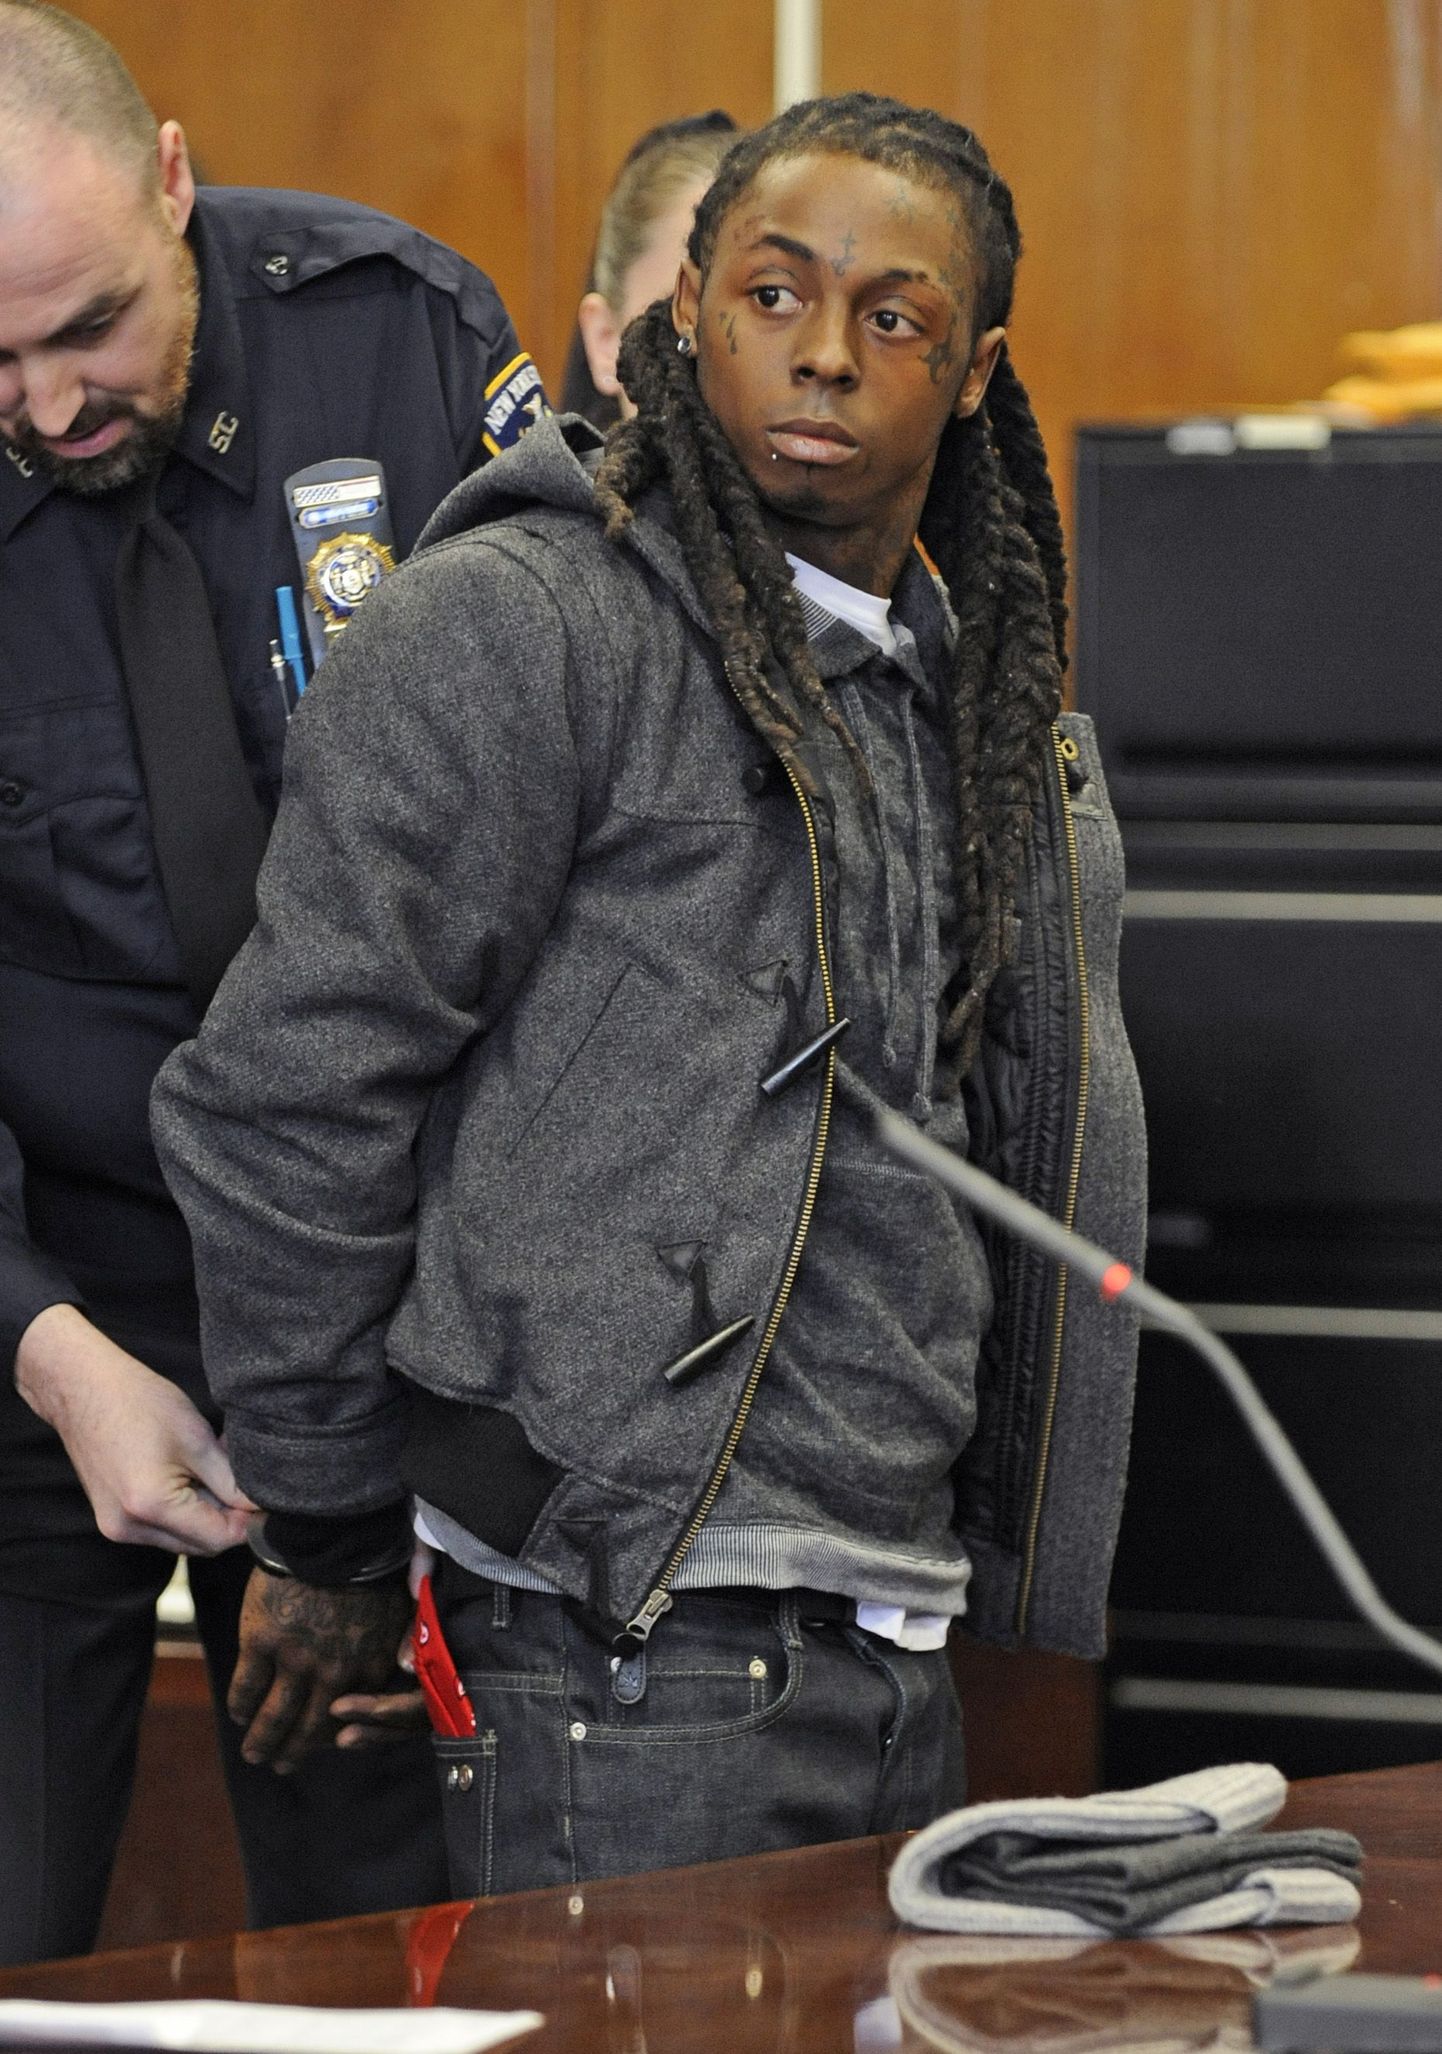 Lil Wayne võeti tänavu märtsis vahi alla pärast süüdimõistva kohtuotsuse väljakuulutamist